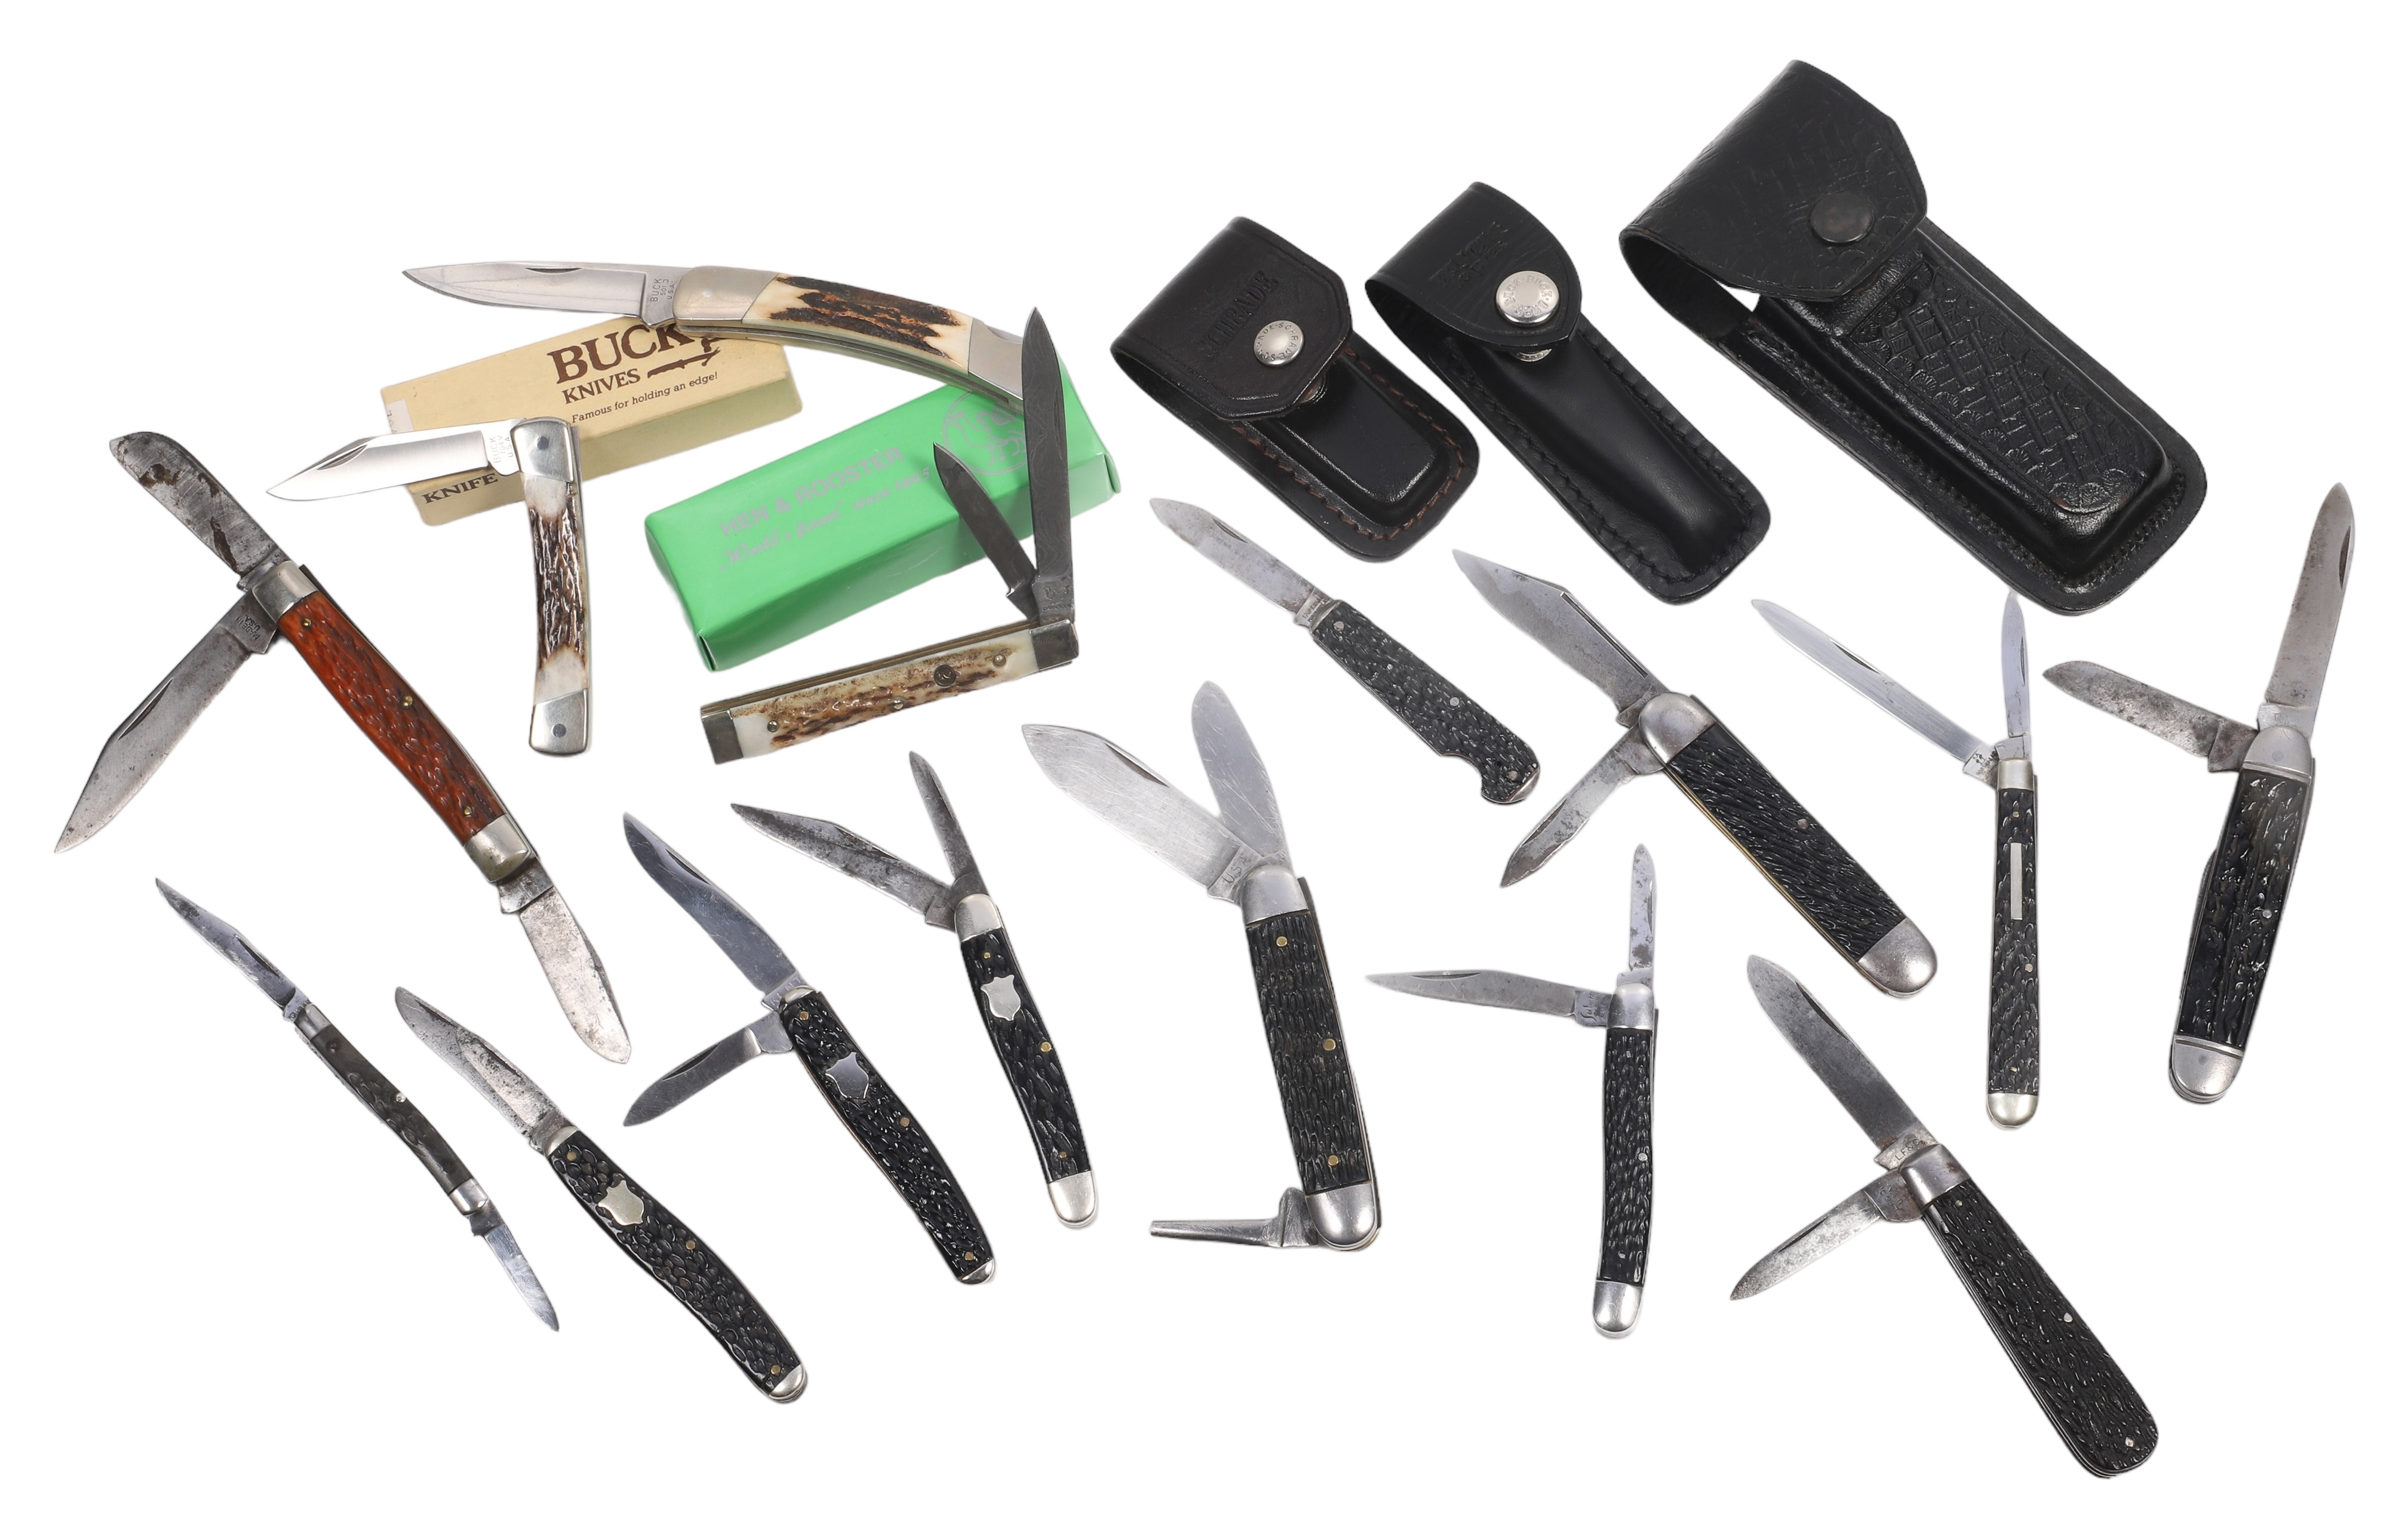  15 Antler handle pocket knives  317f9b